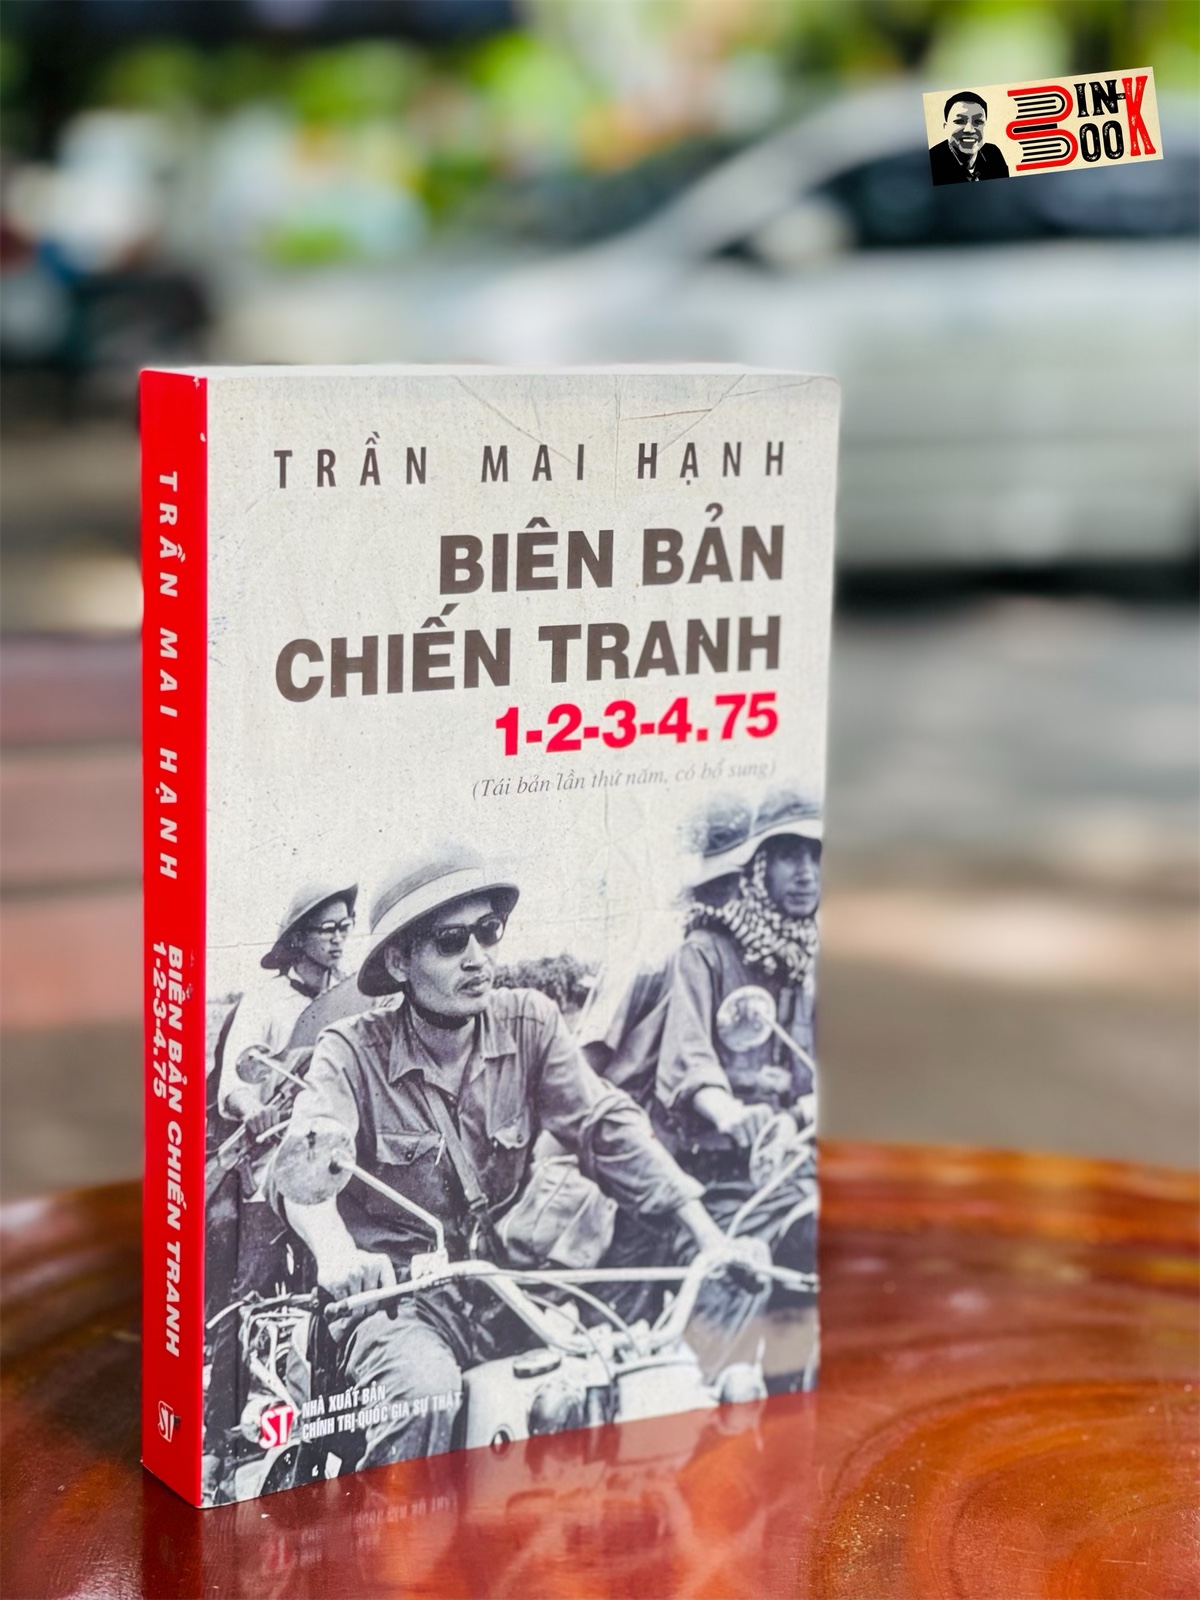 BIÊN BẢN CHIẾN TRANH 1-2-3-4.75 (tái bản lần thứ năm, có bổ sung) – Trần Mai Hạnh – Giải thưởng Hội nhà văn Việt Nam 2014 - NXB CTQG Sự Thật